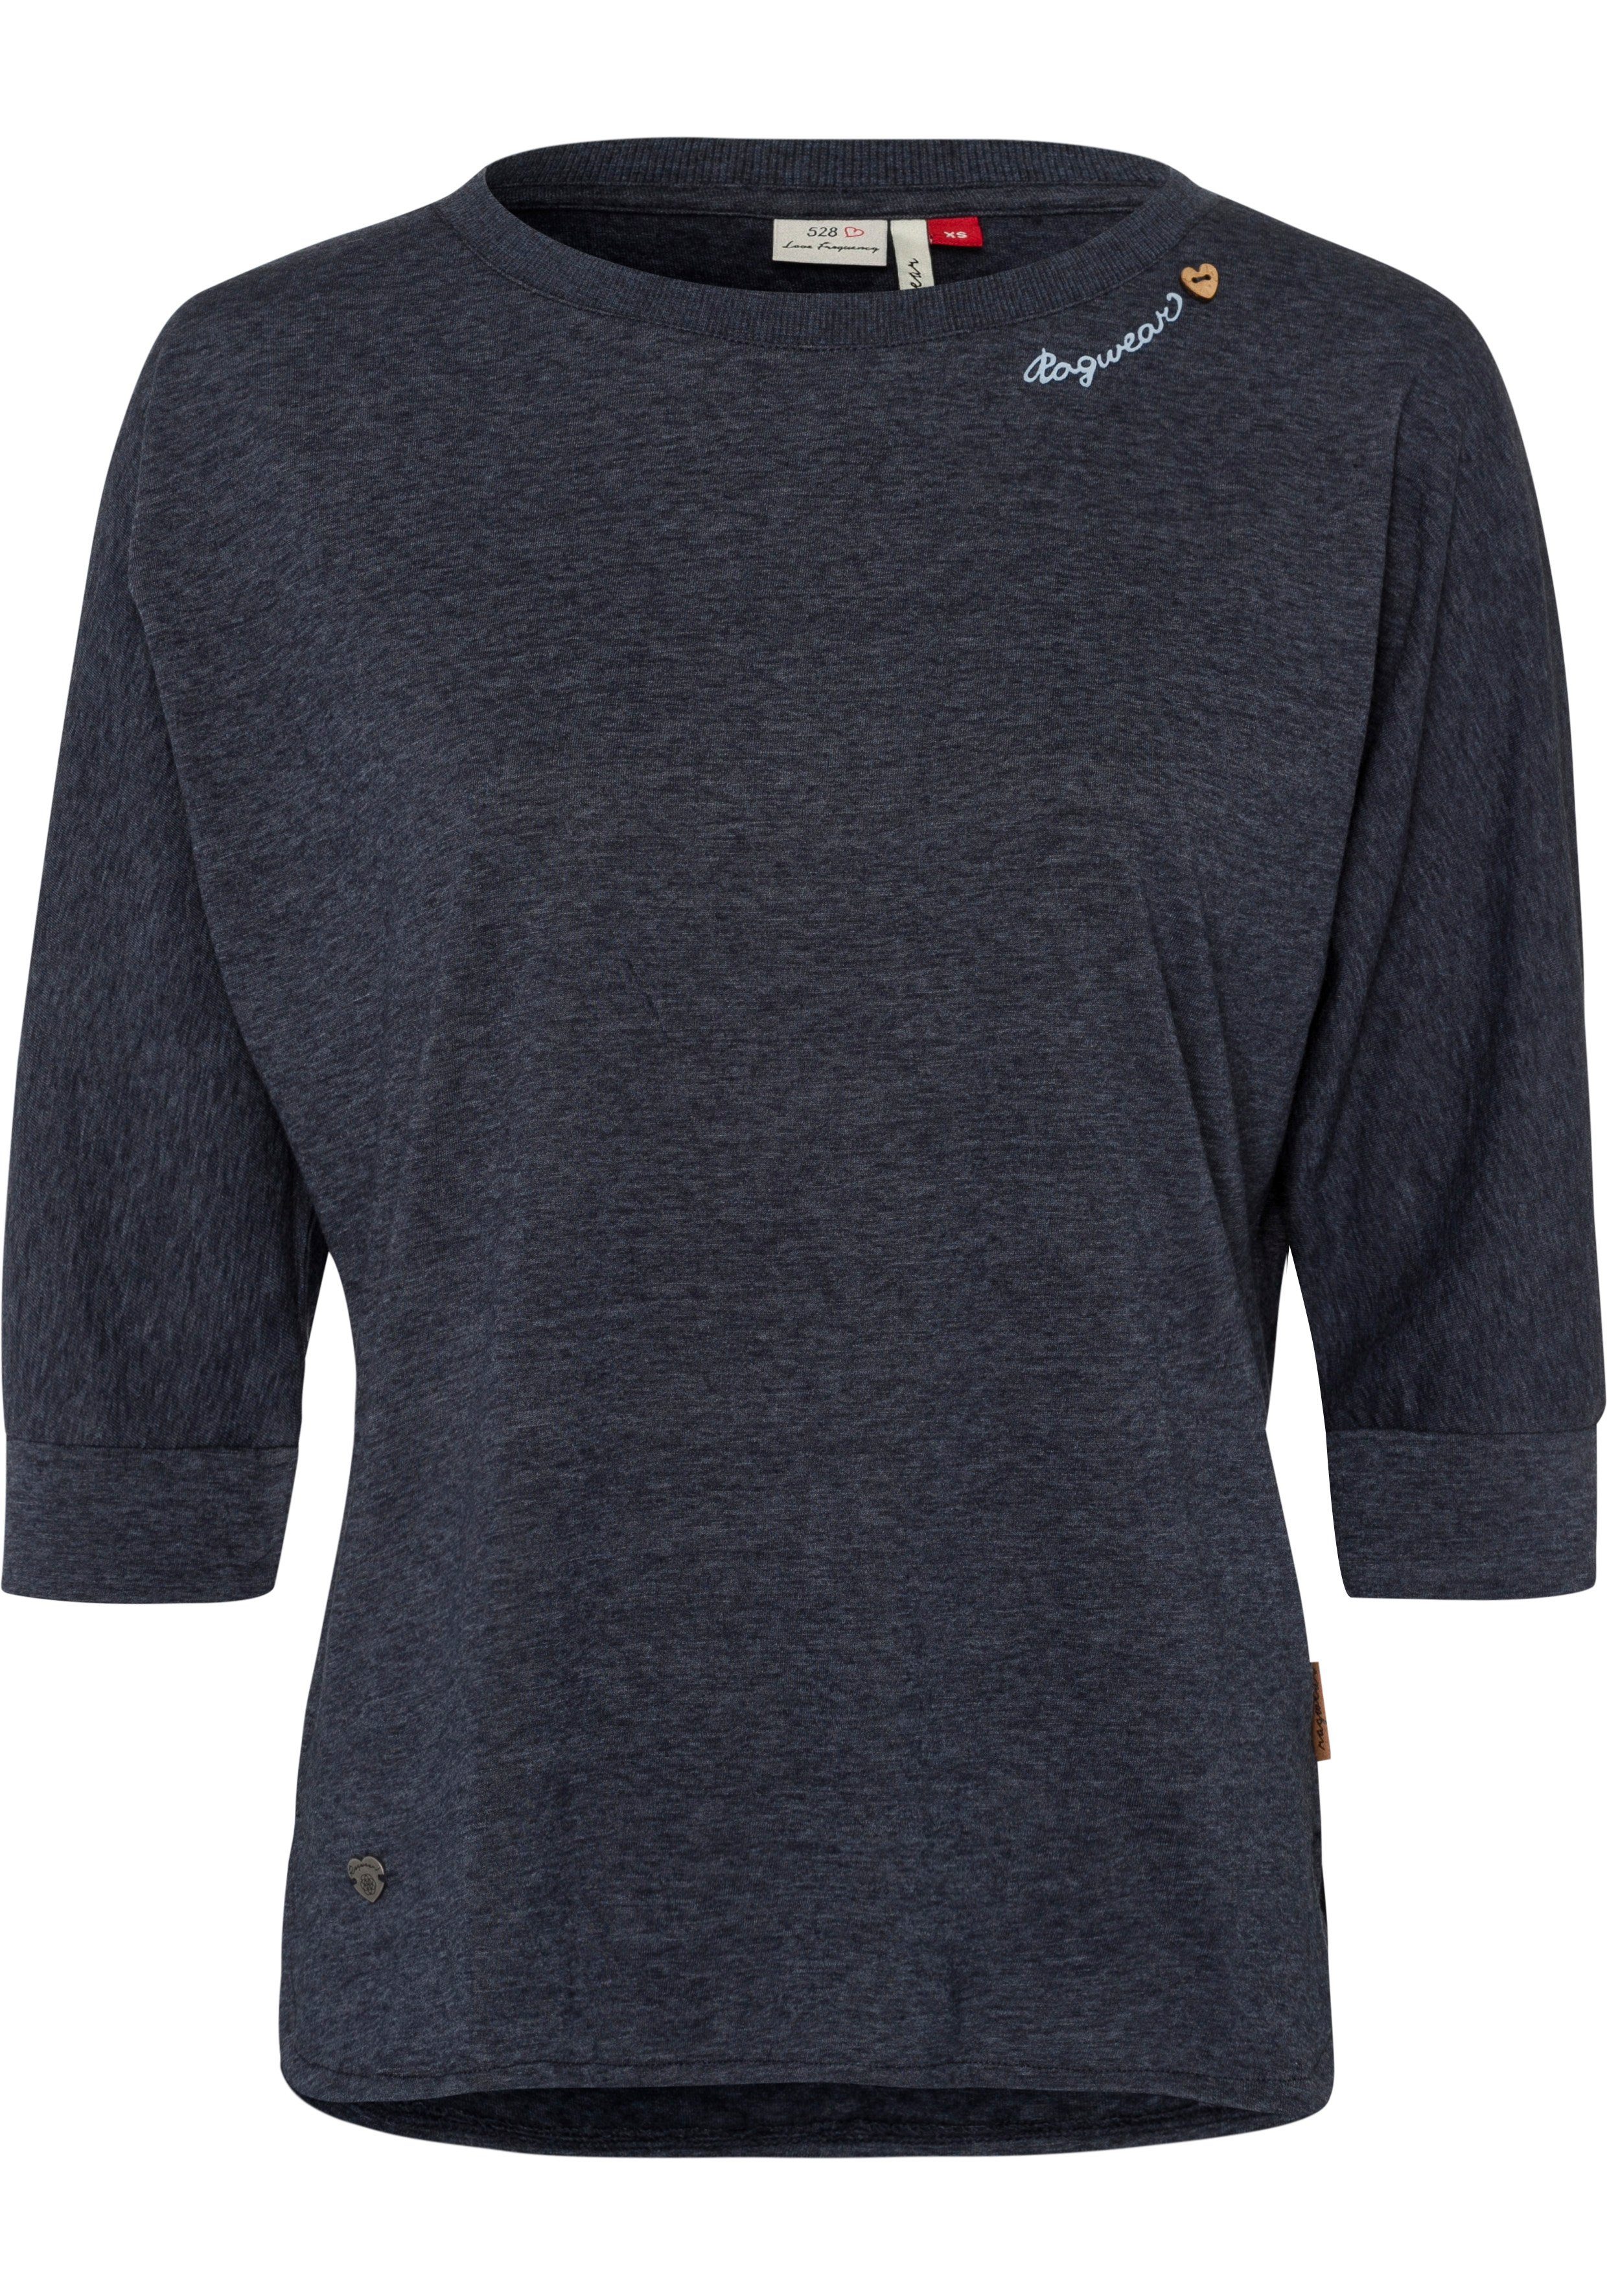 Ragwear T-Shirt SHIMONA mit Zierknopfbesatz in natürlicher Holzoptik im Herz-Design navy